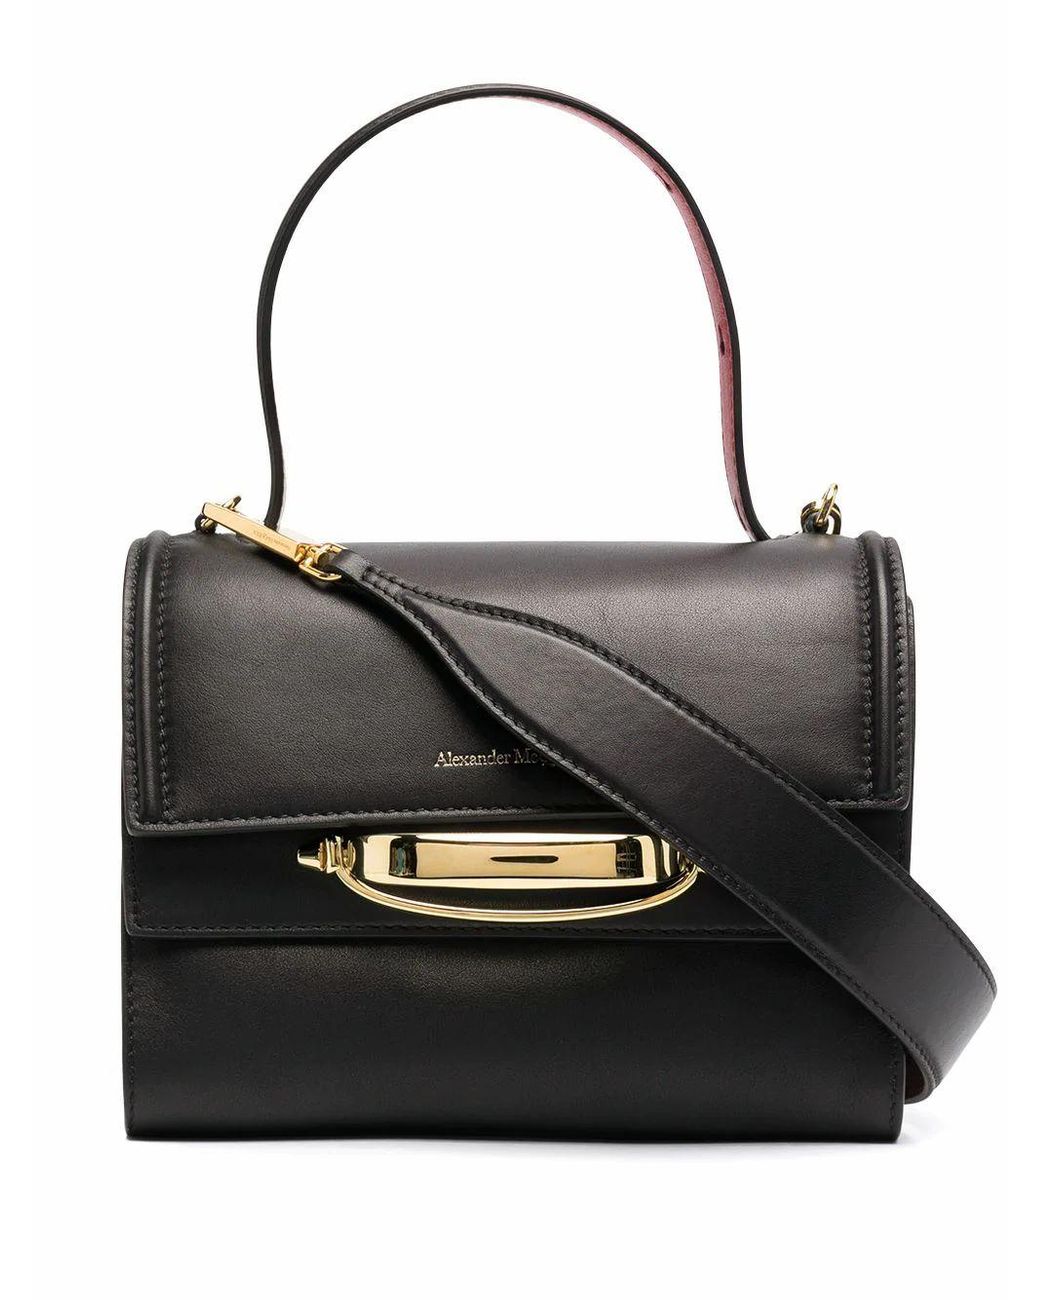 Alexander McQueen Leather Handbag in Black - Lyst